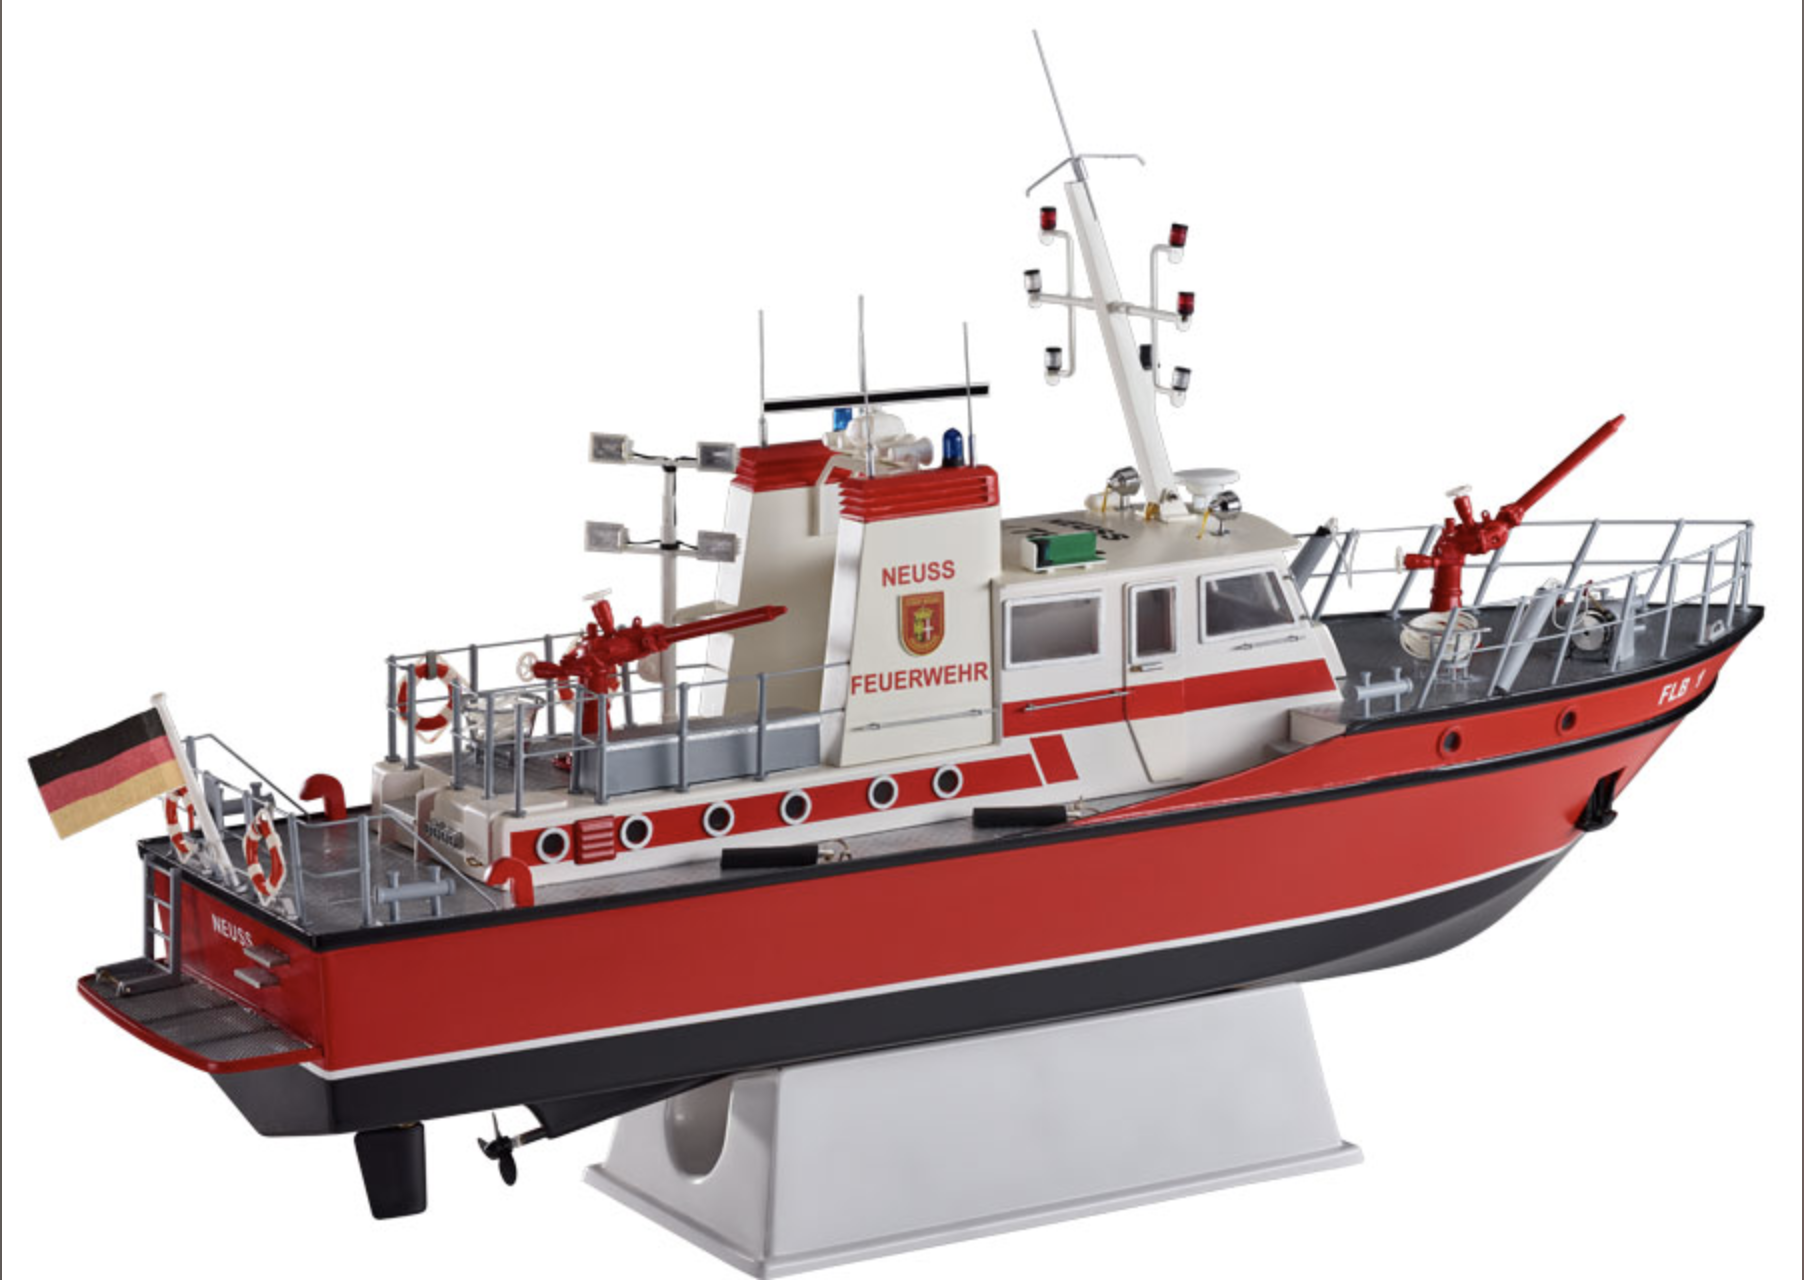 FLB-1 Fire Boat (Krick, 1:25)